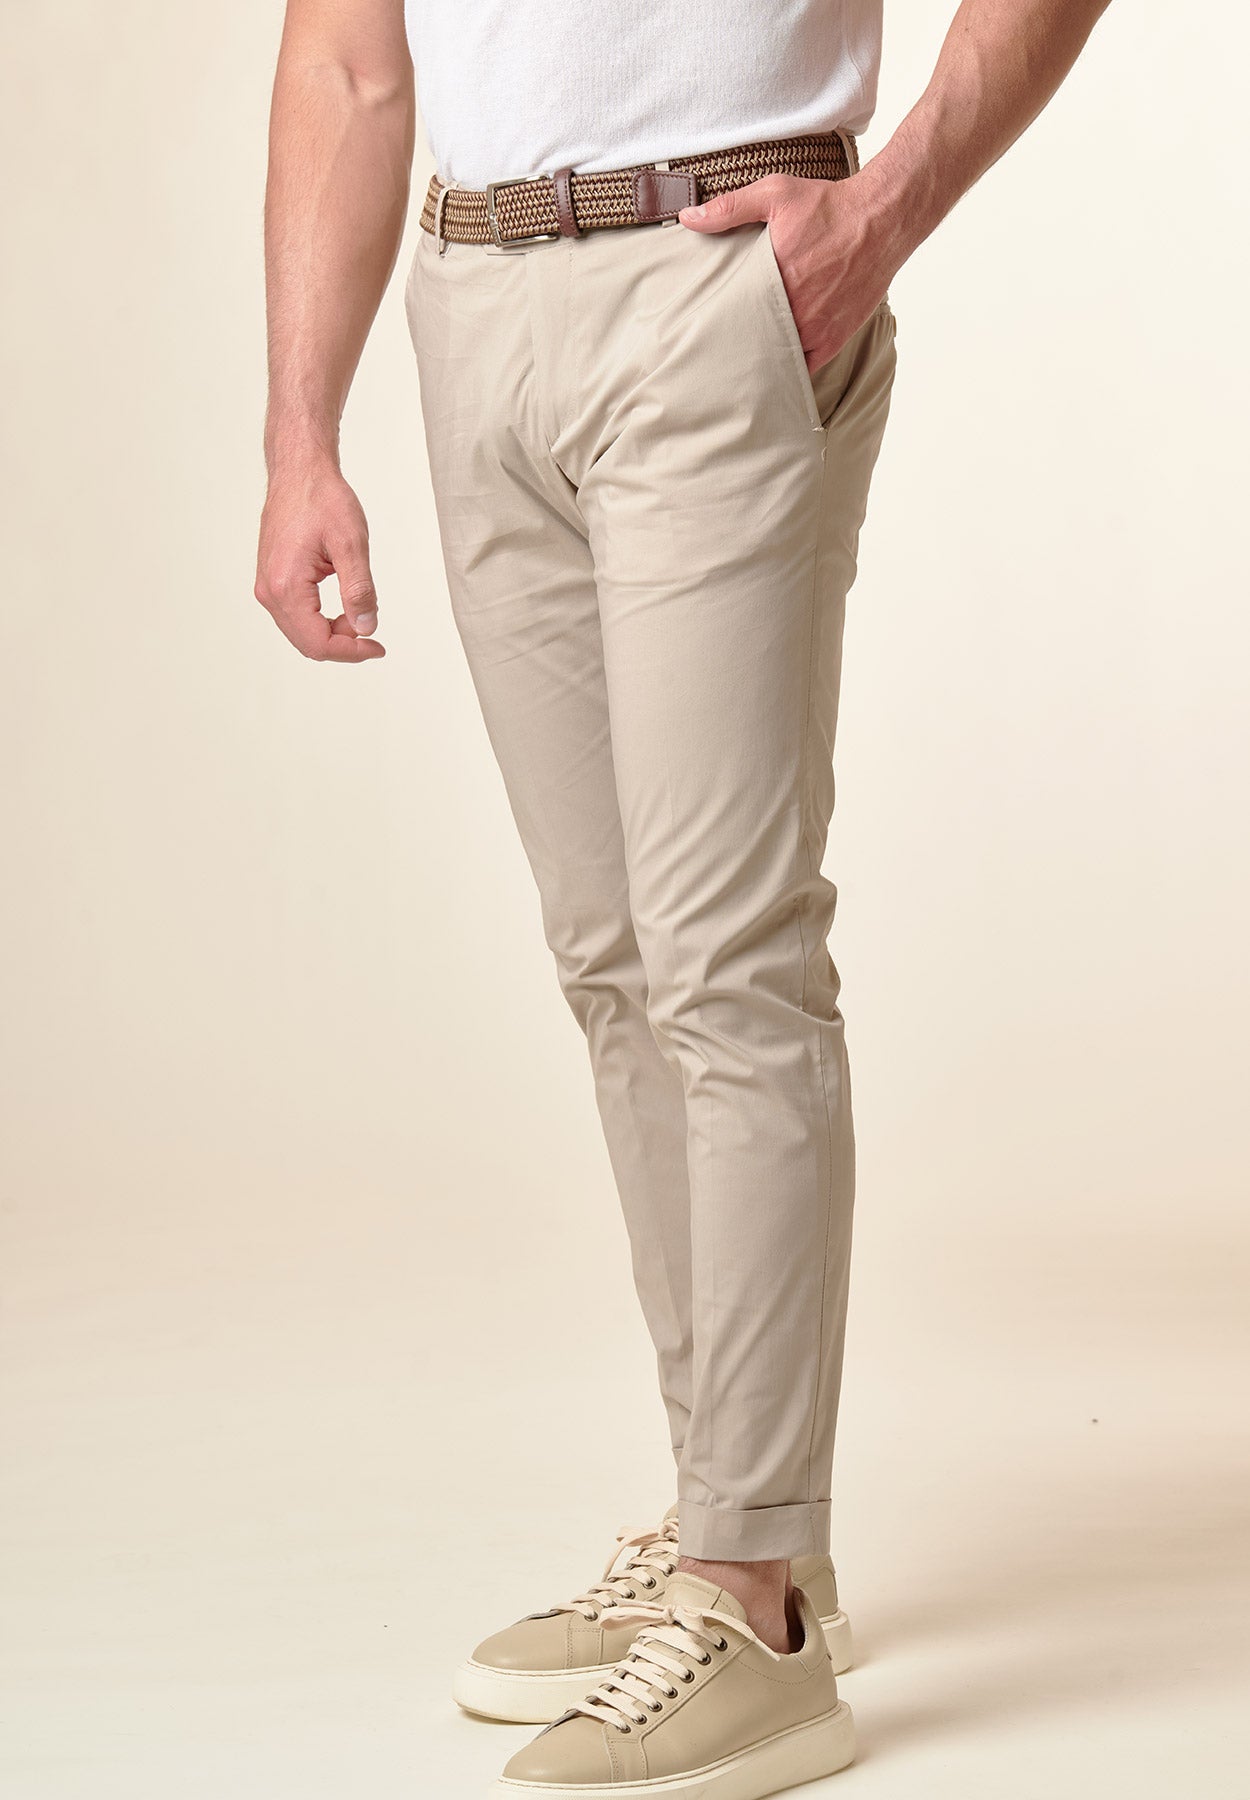 Beigefarbene Slim-Fit-Hose aus technischer Baumwolle mit Umschlag